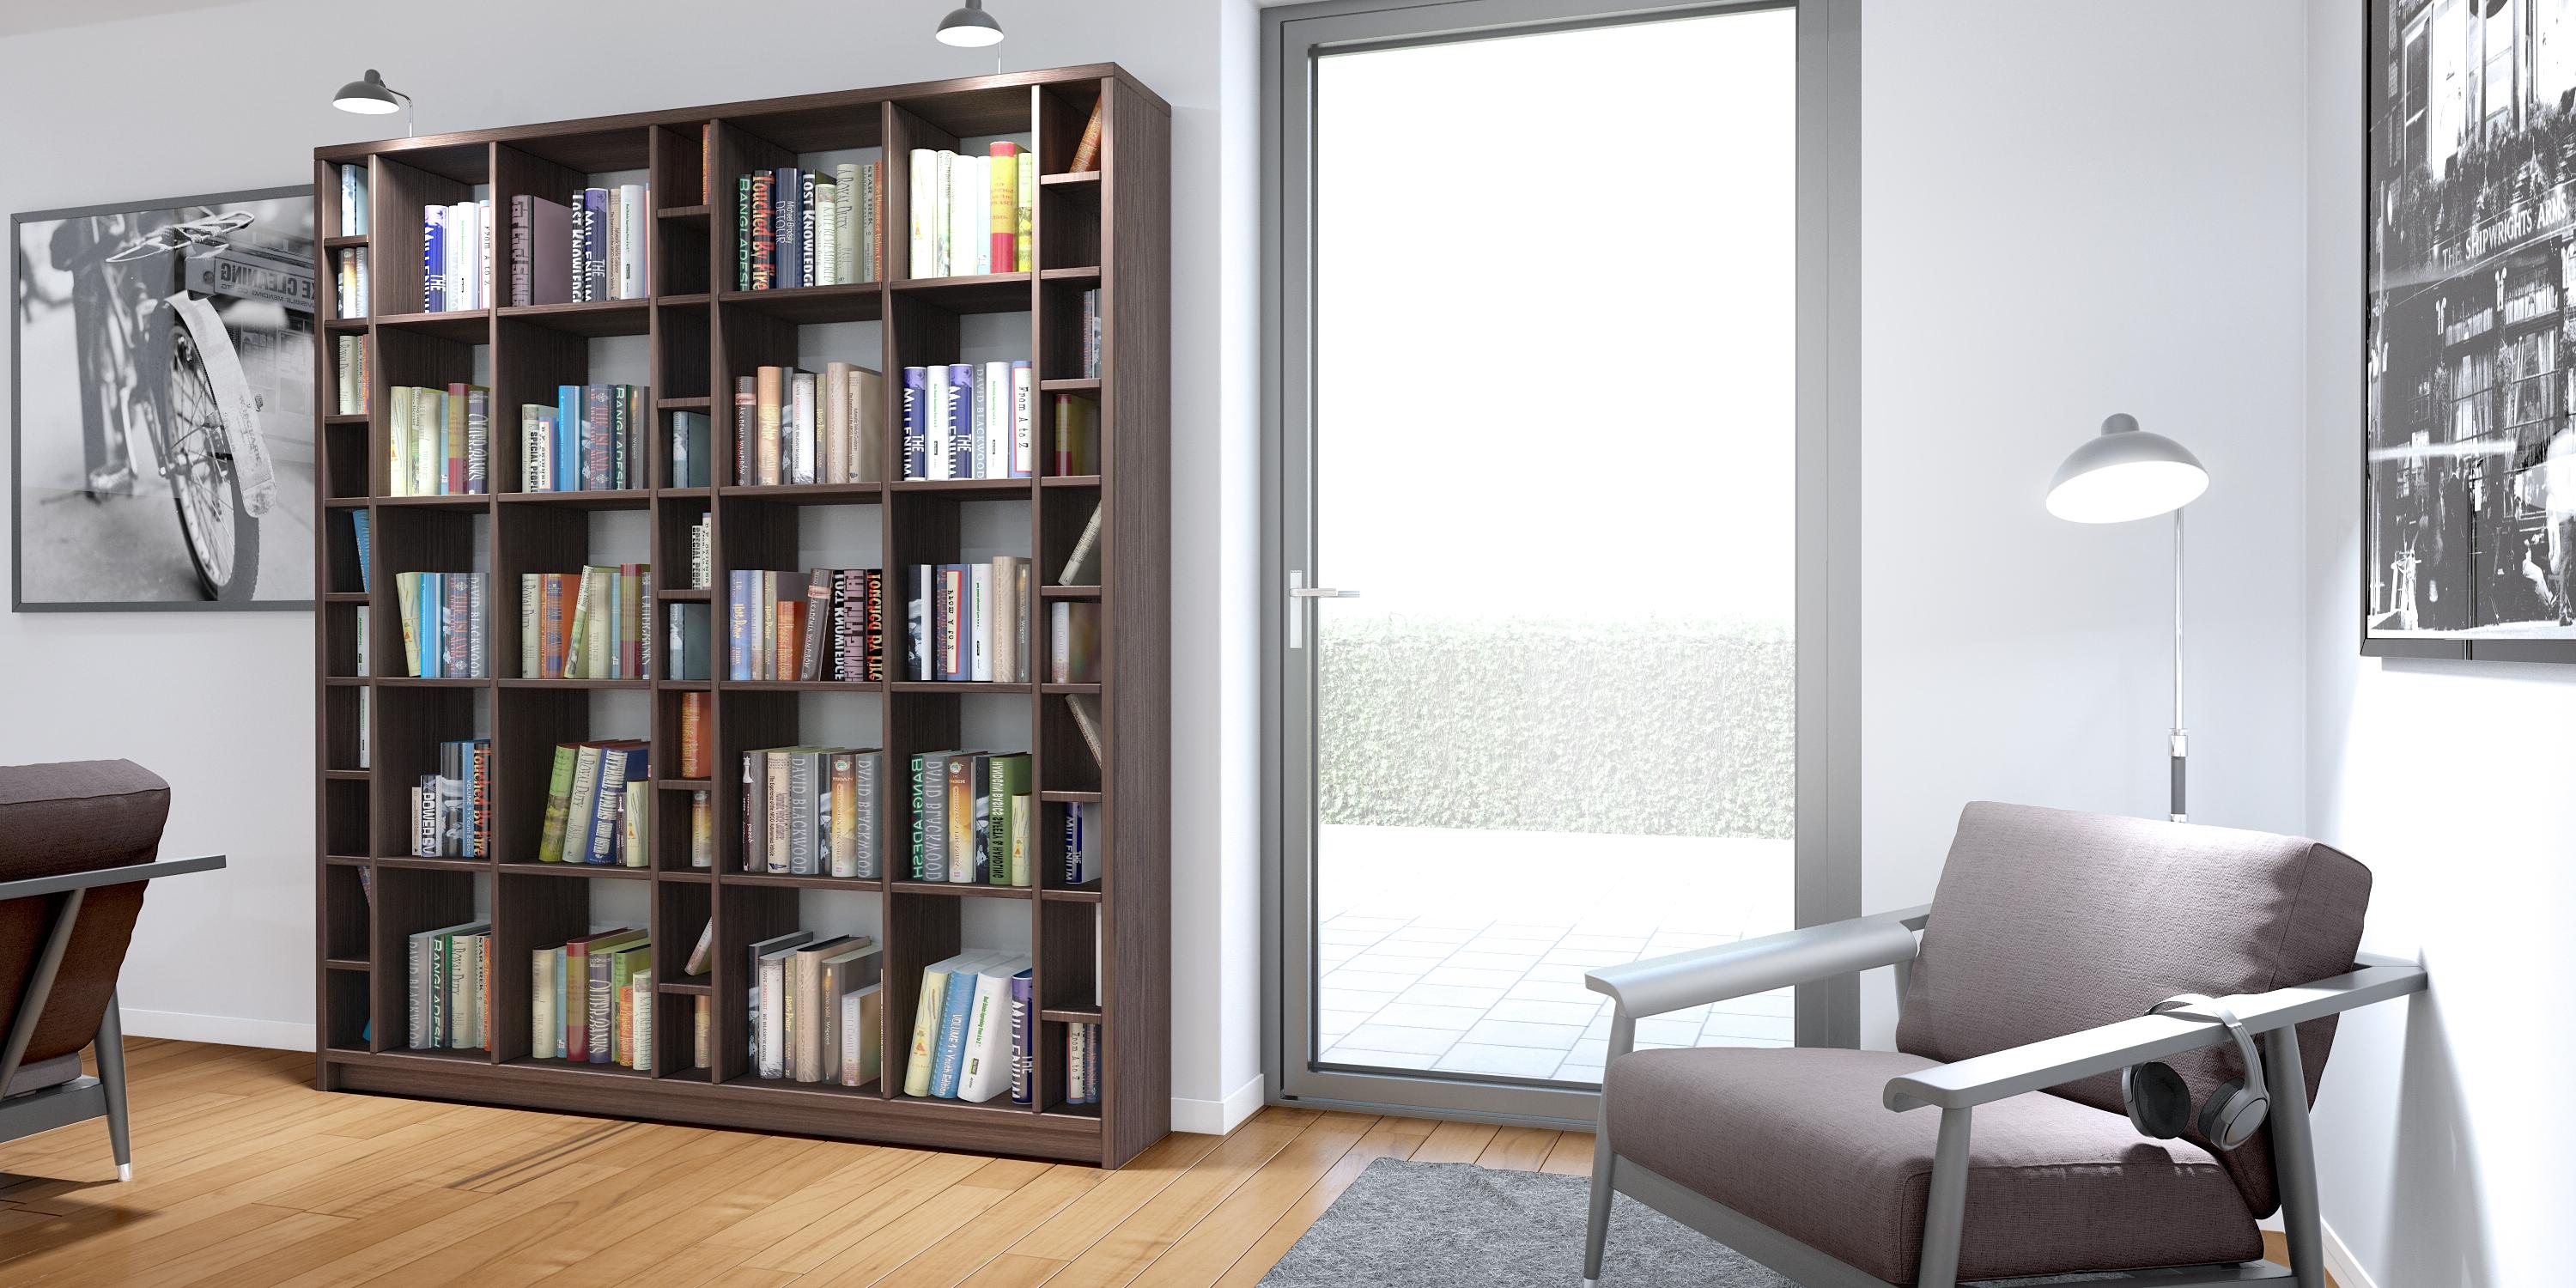 Modernes Bücherregal aus geräucherter Eiche #bibliothek #regal #bücherregal #raumteiler ©Pickawood